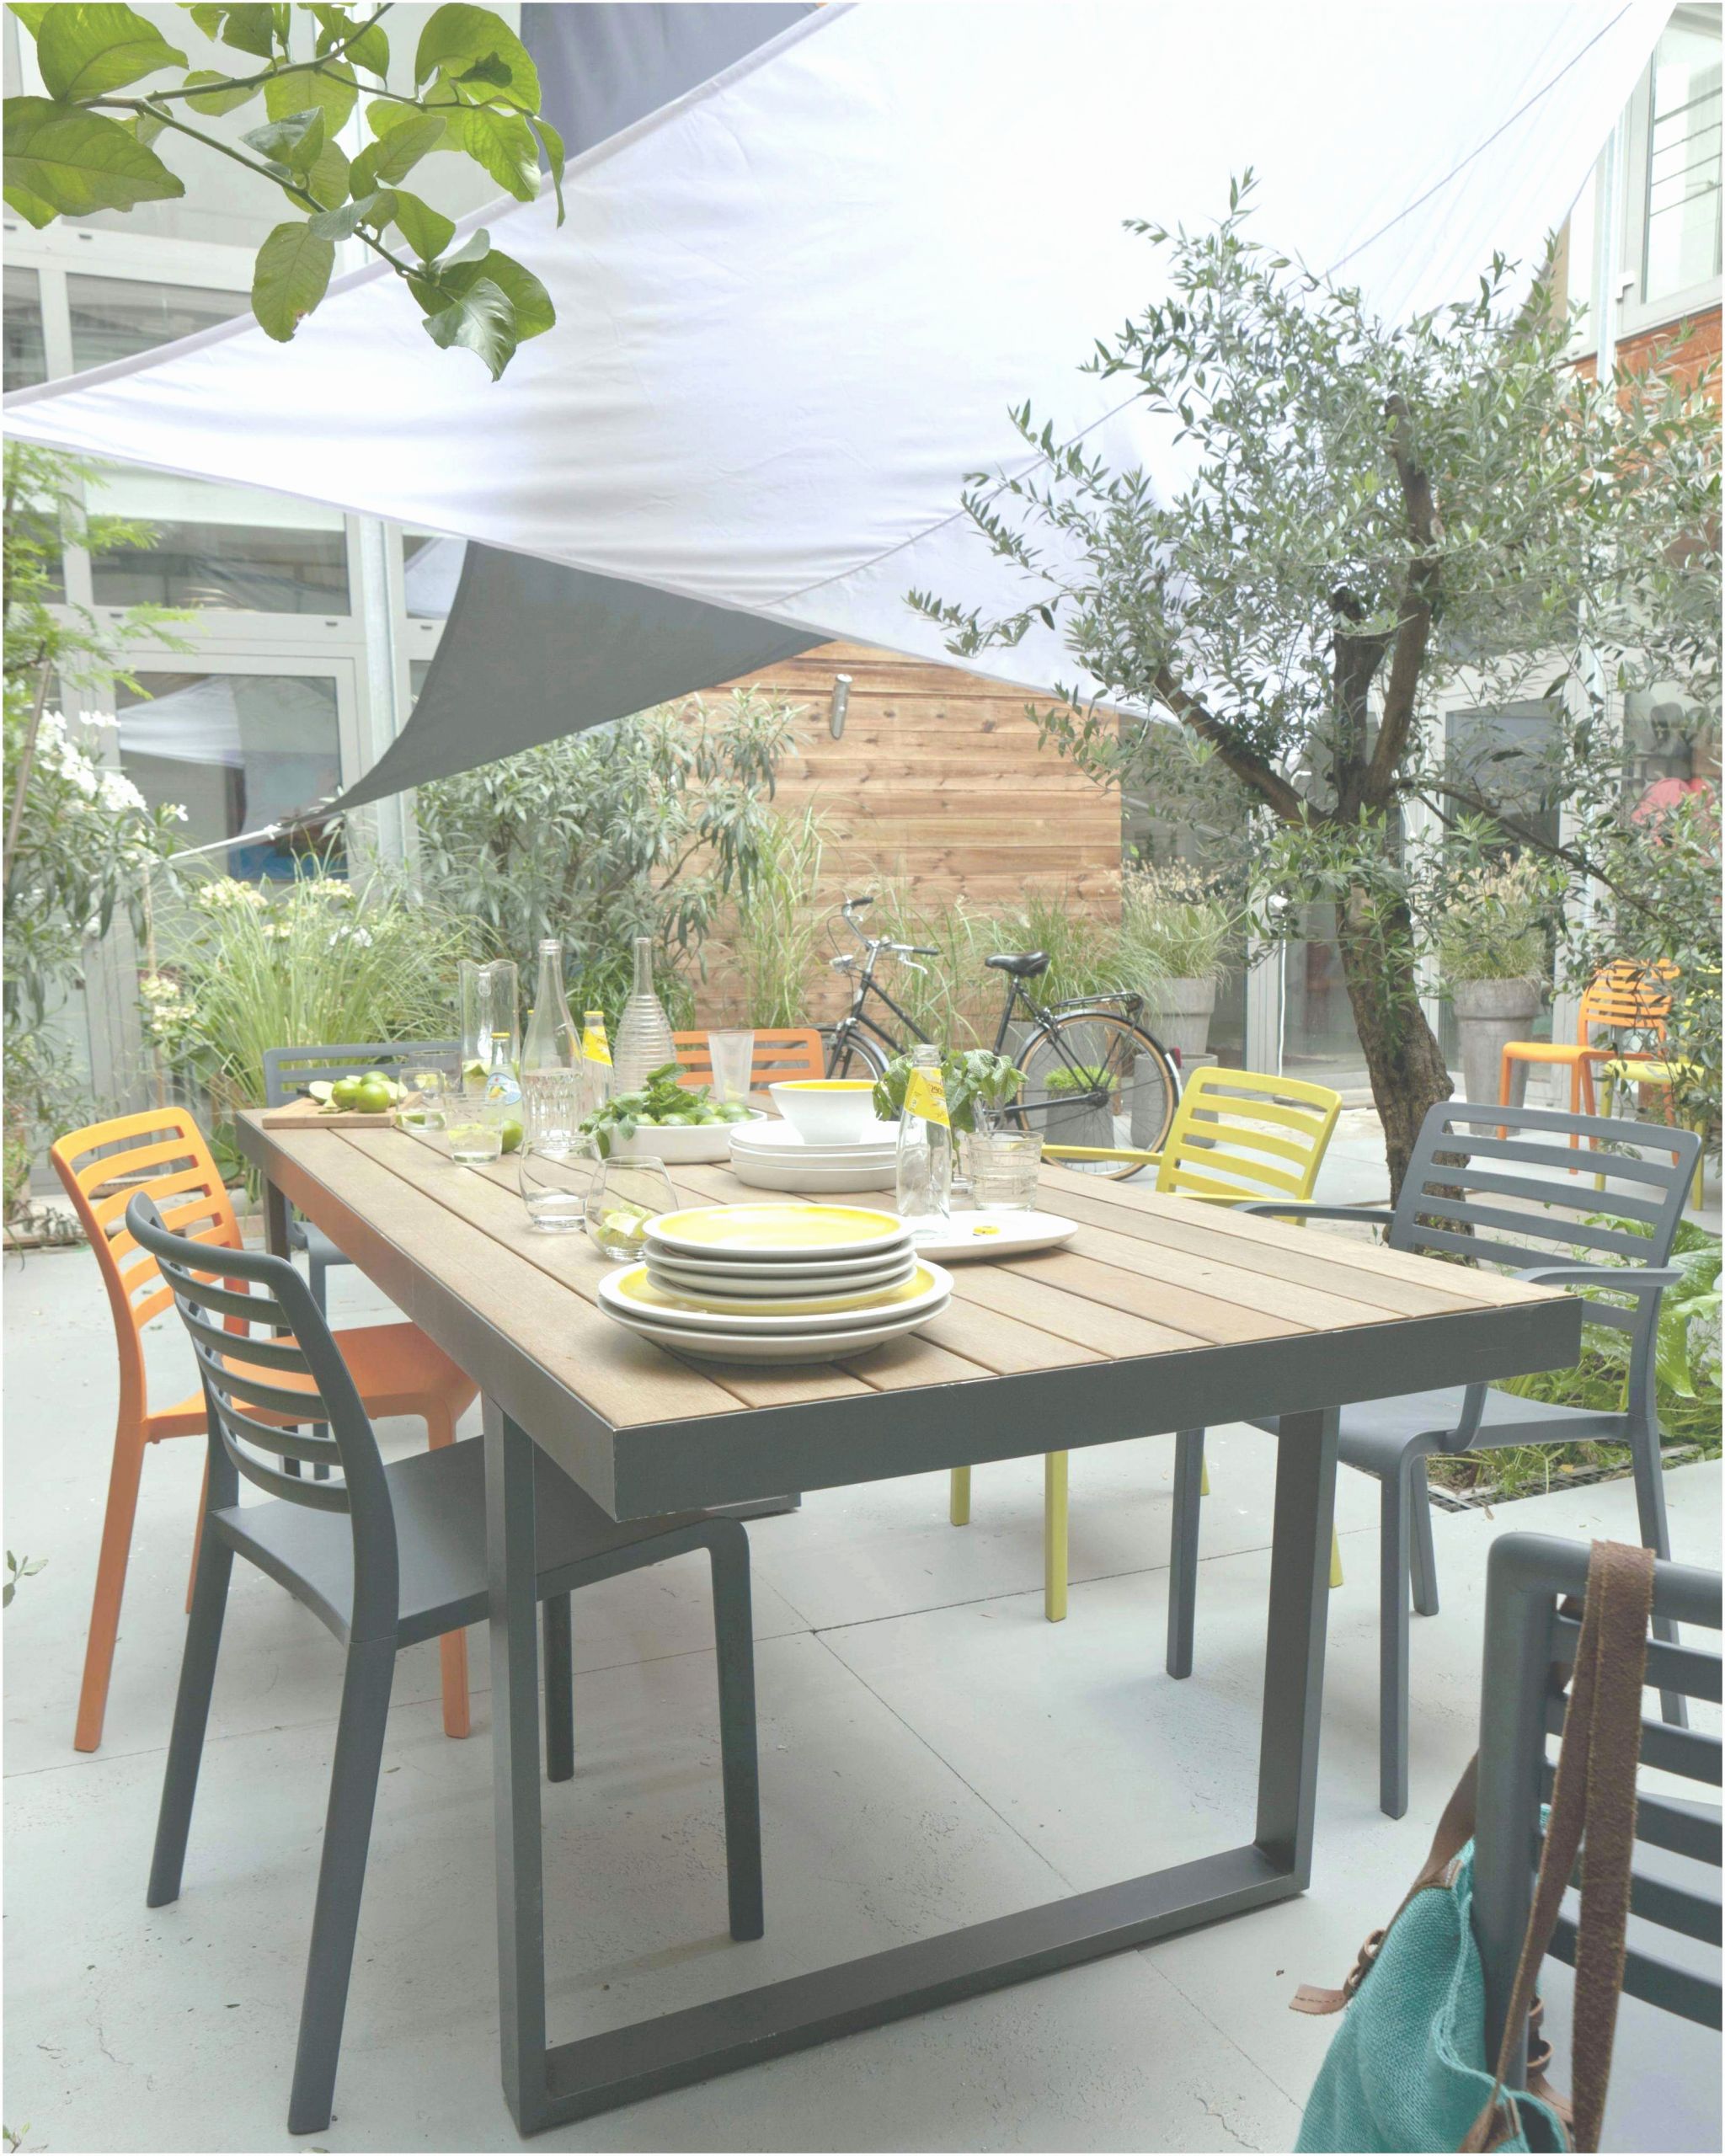 table basse jardin castorama inspire 34 idees de design castorama meuble de jardin of table basse jardin castorama